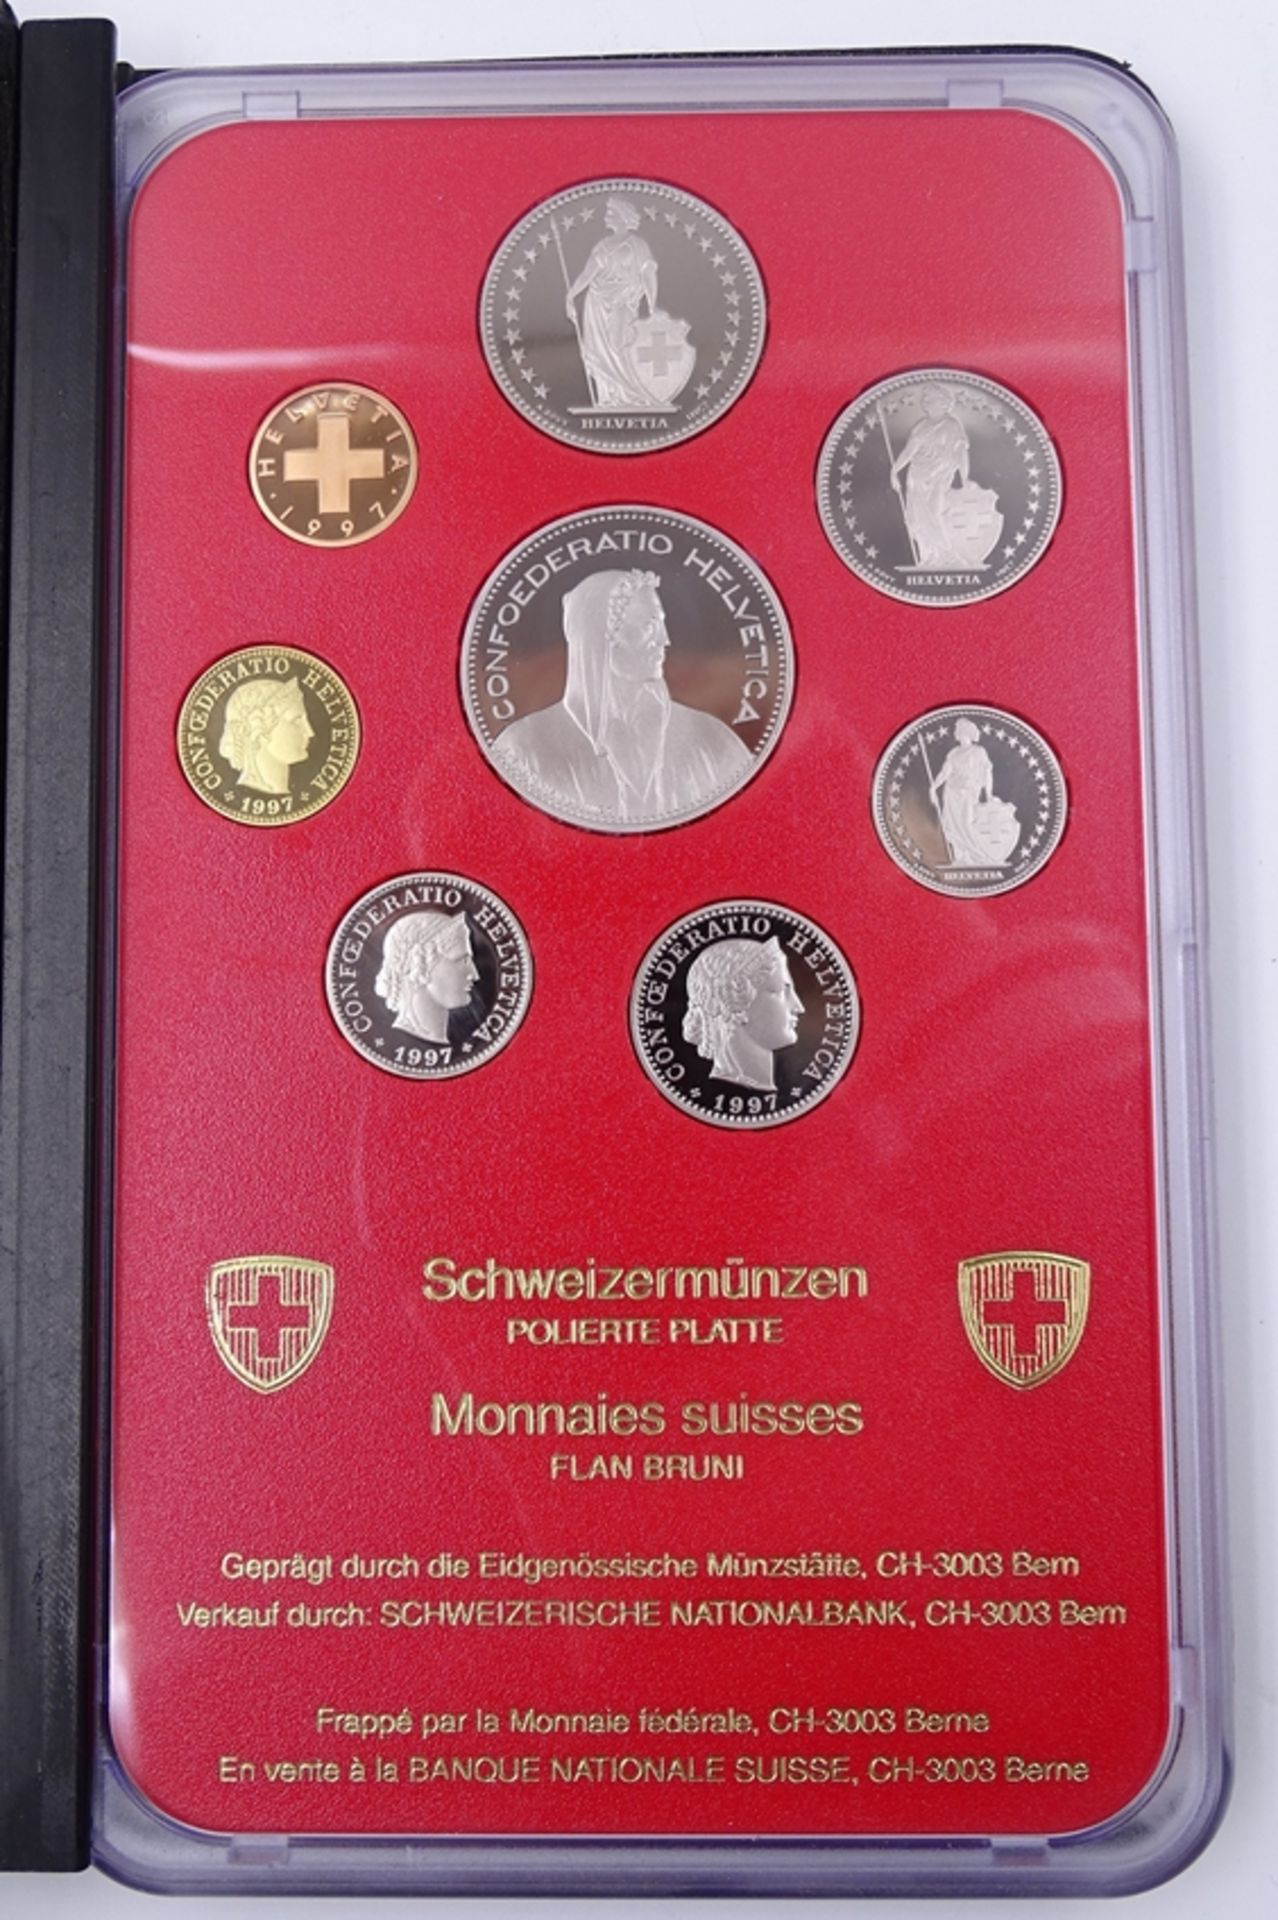 Münzsatz Schweizer Franken 1997, 8,86 CHR, in Schatulle, Umschlag und Schuber - Bild 3 aus 5